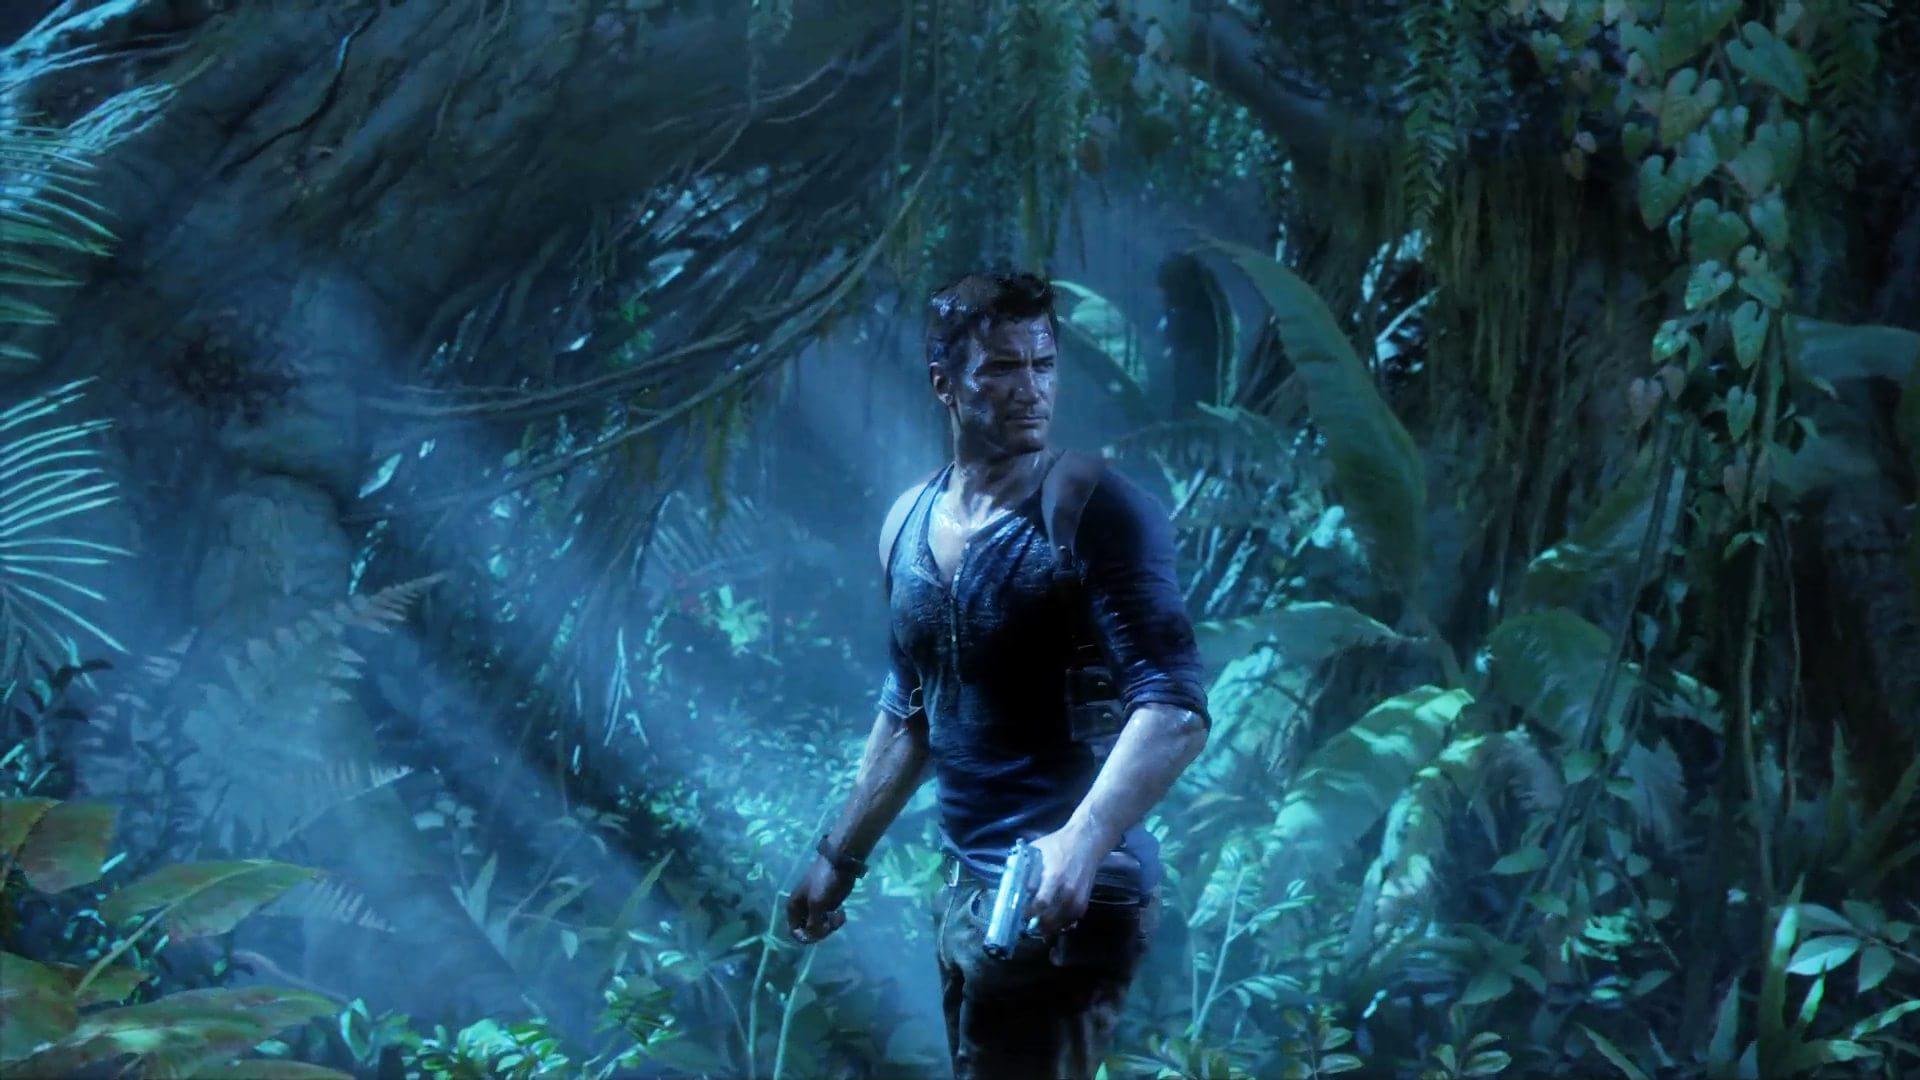 Uncharted 2: próximo filme da franquia está nos planos, mas ainda não há  confirmação